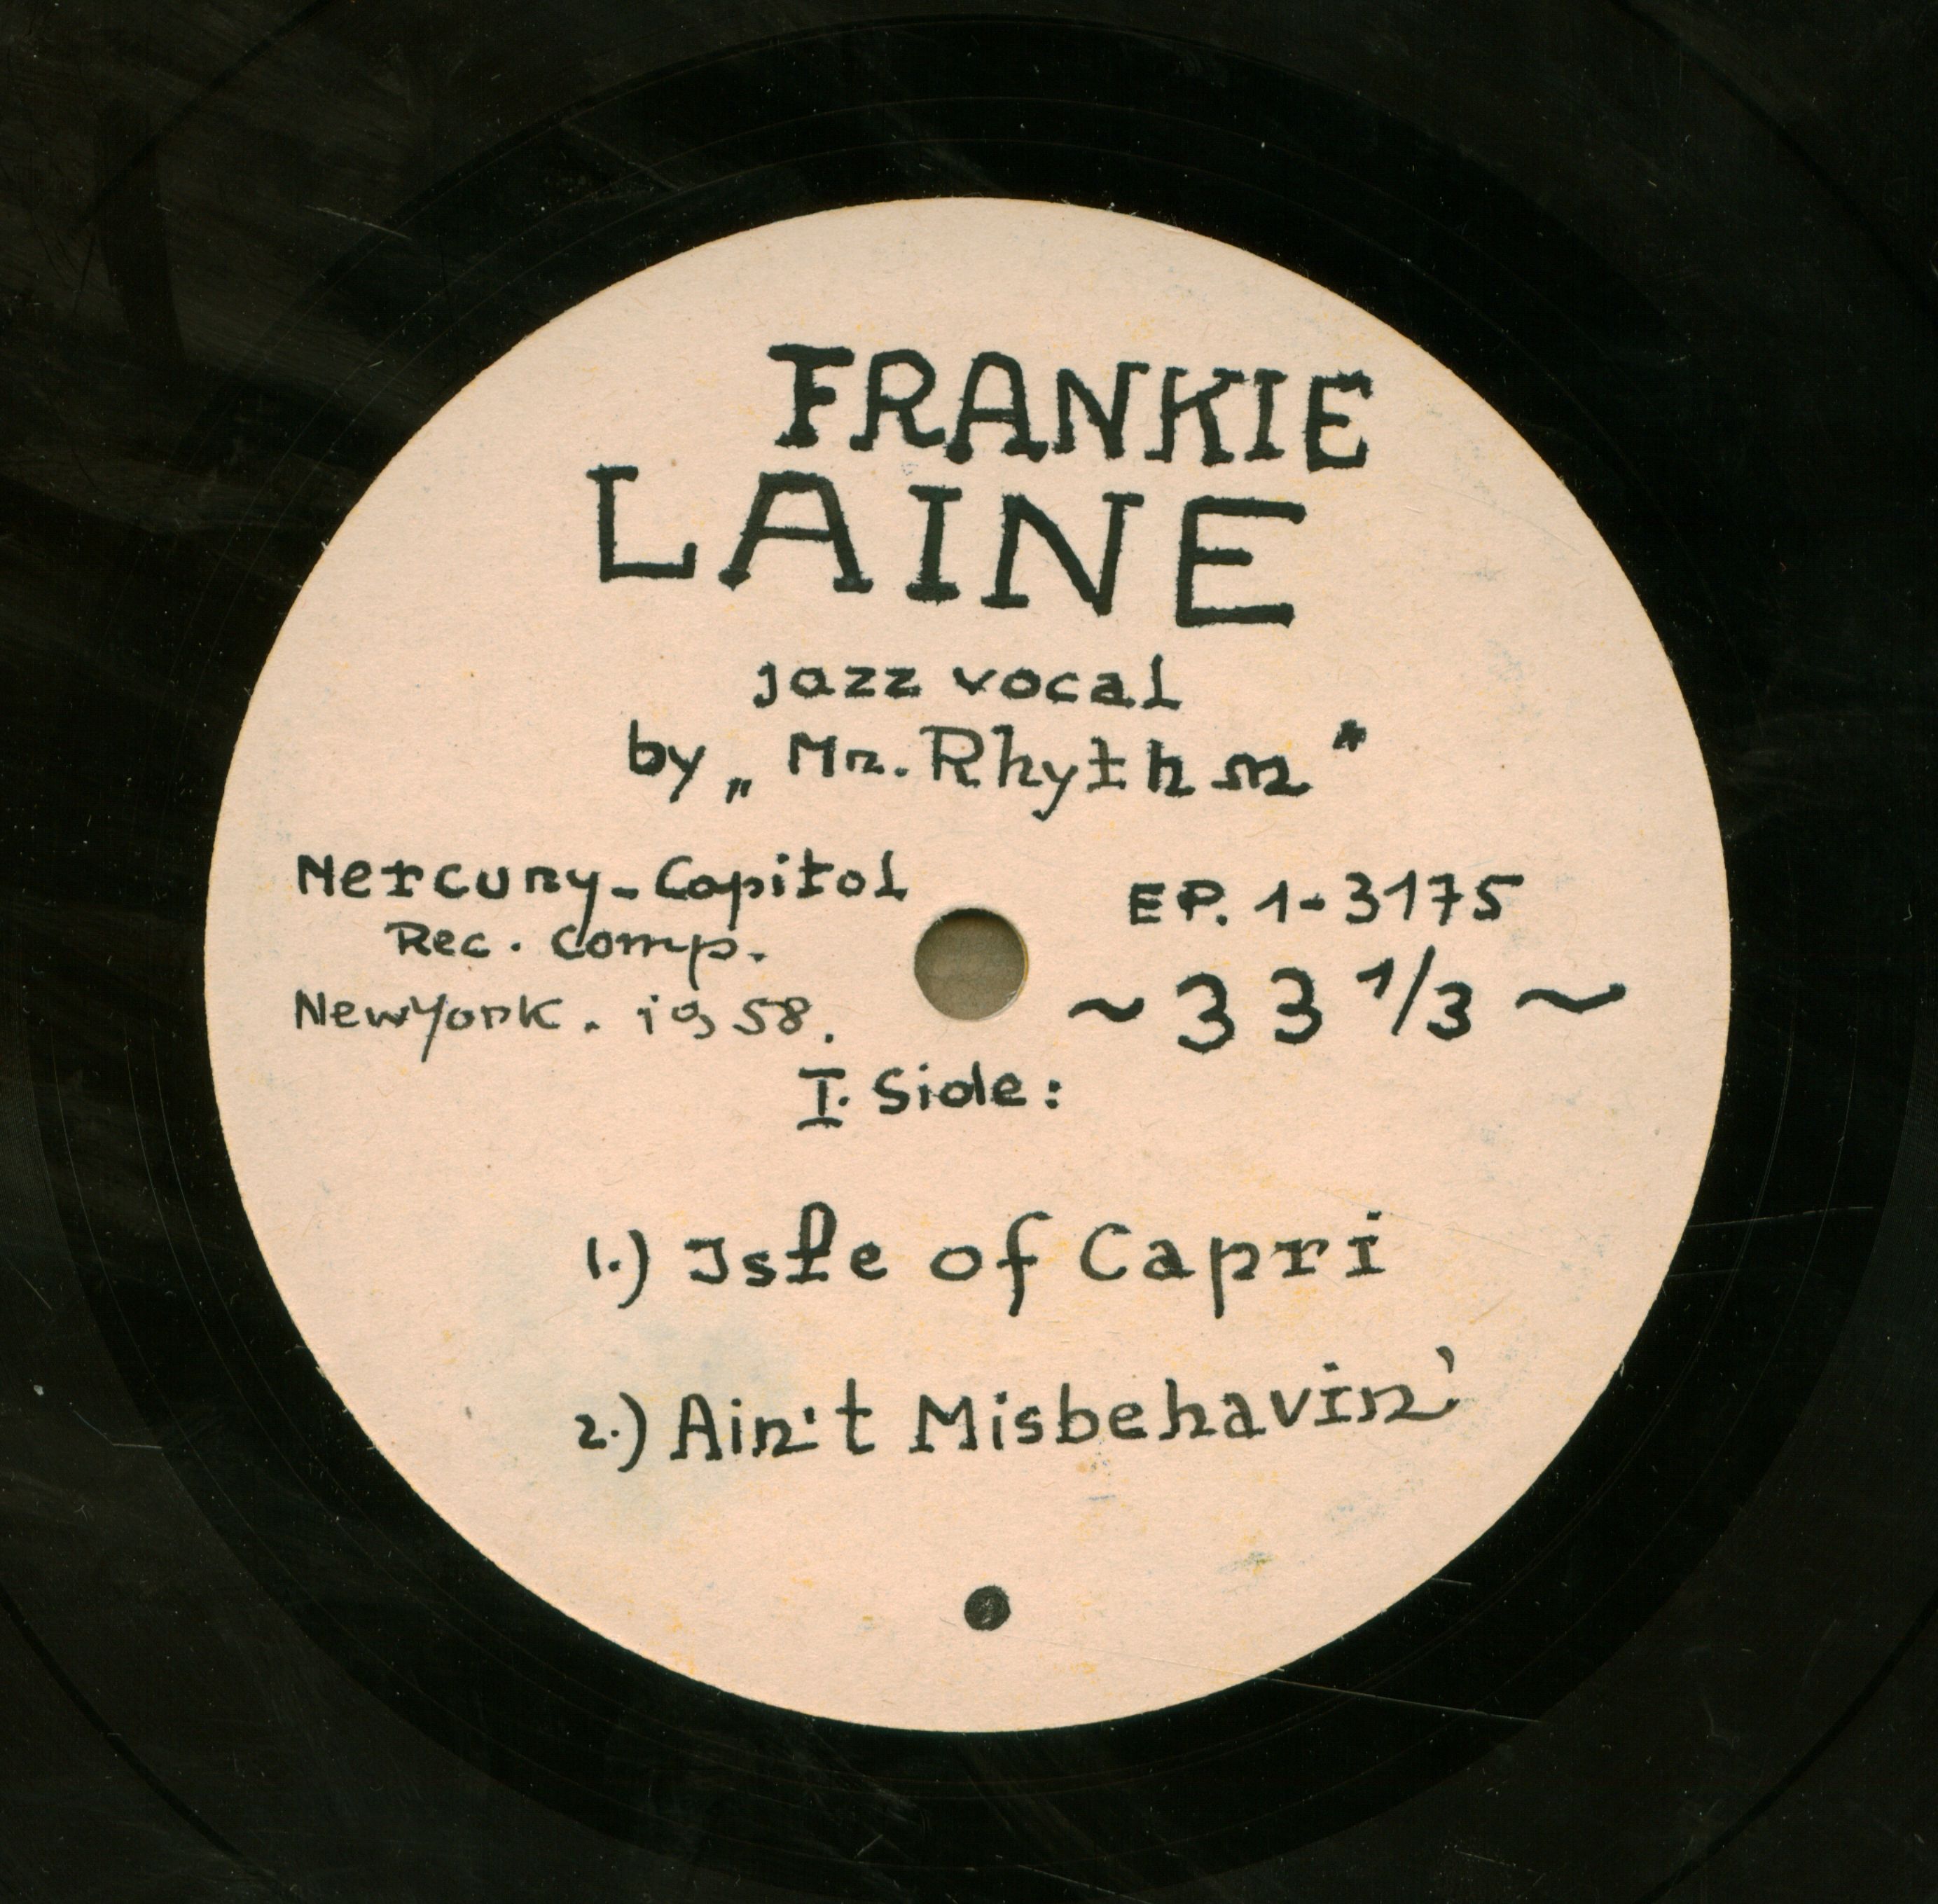 Frankie Laine jazz vocal